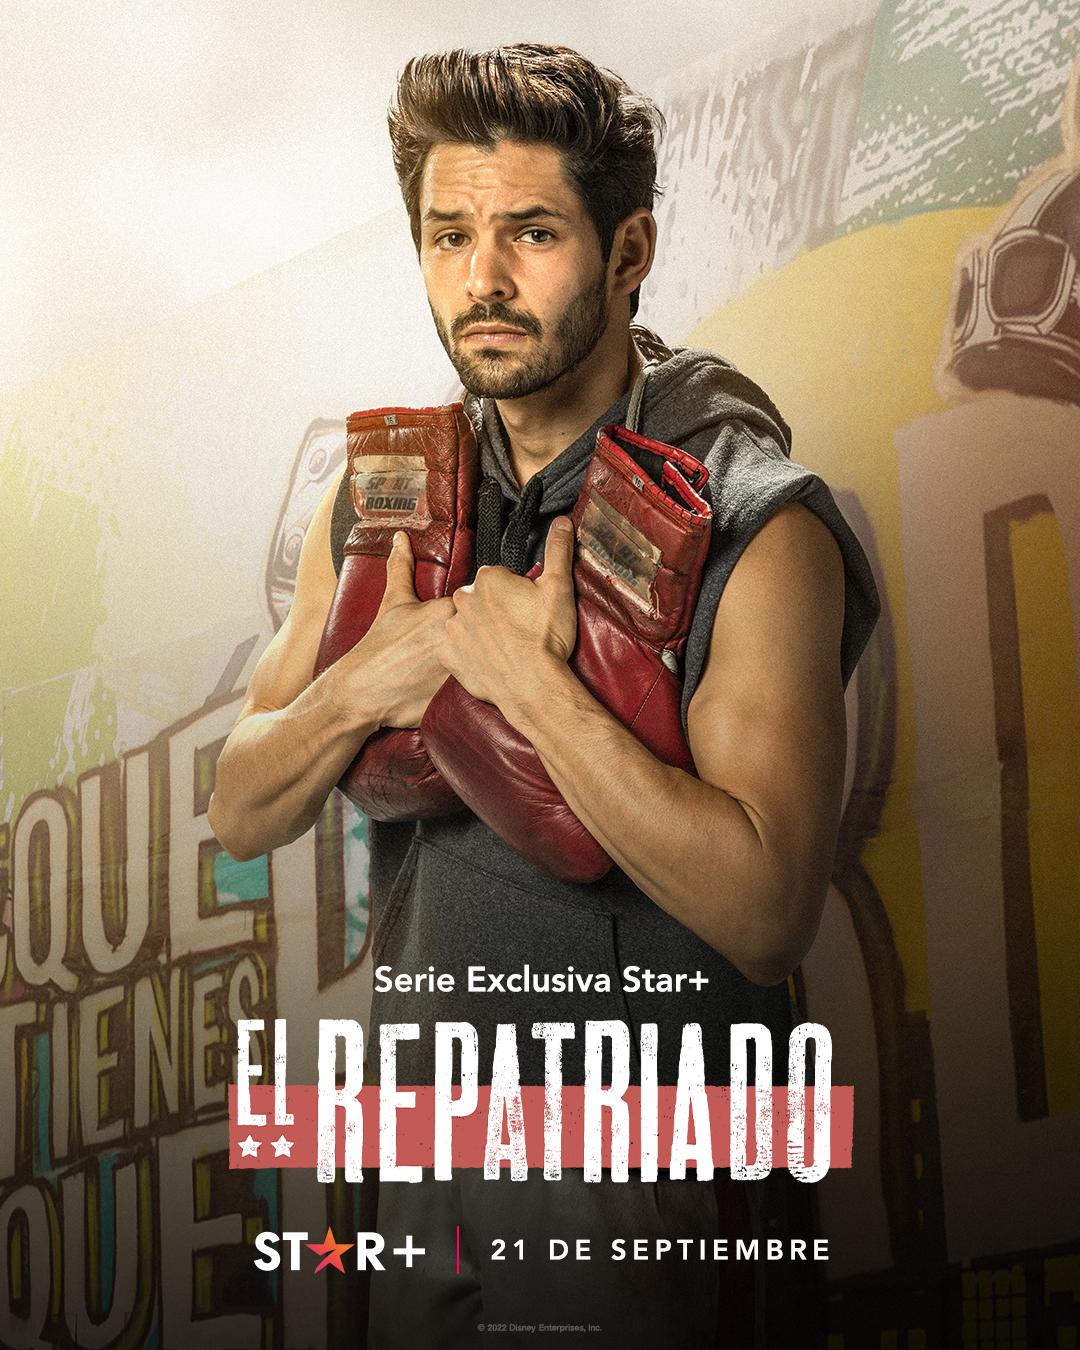 TV ratings for Repatriated (El Repatriado) in Brazil. Star+ TV series